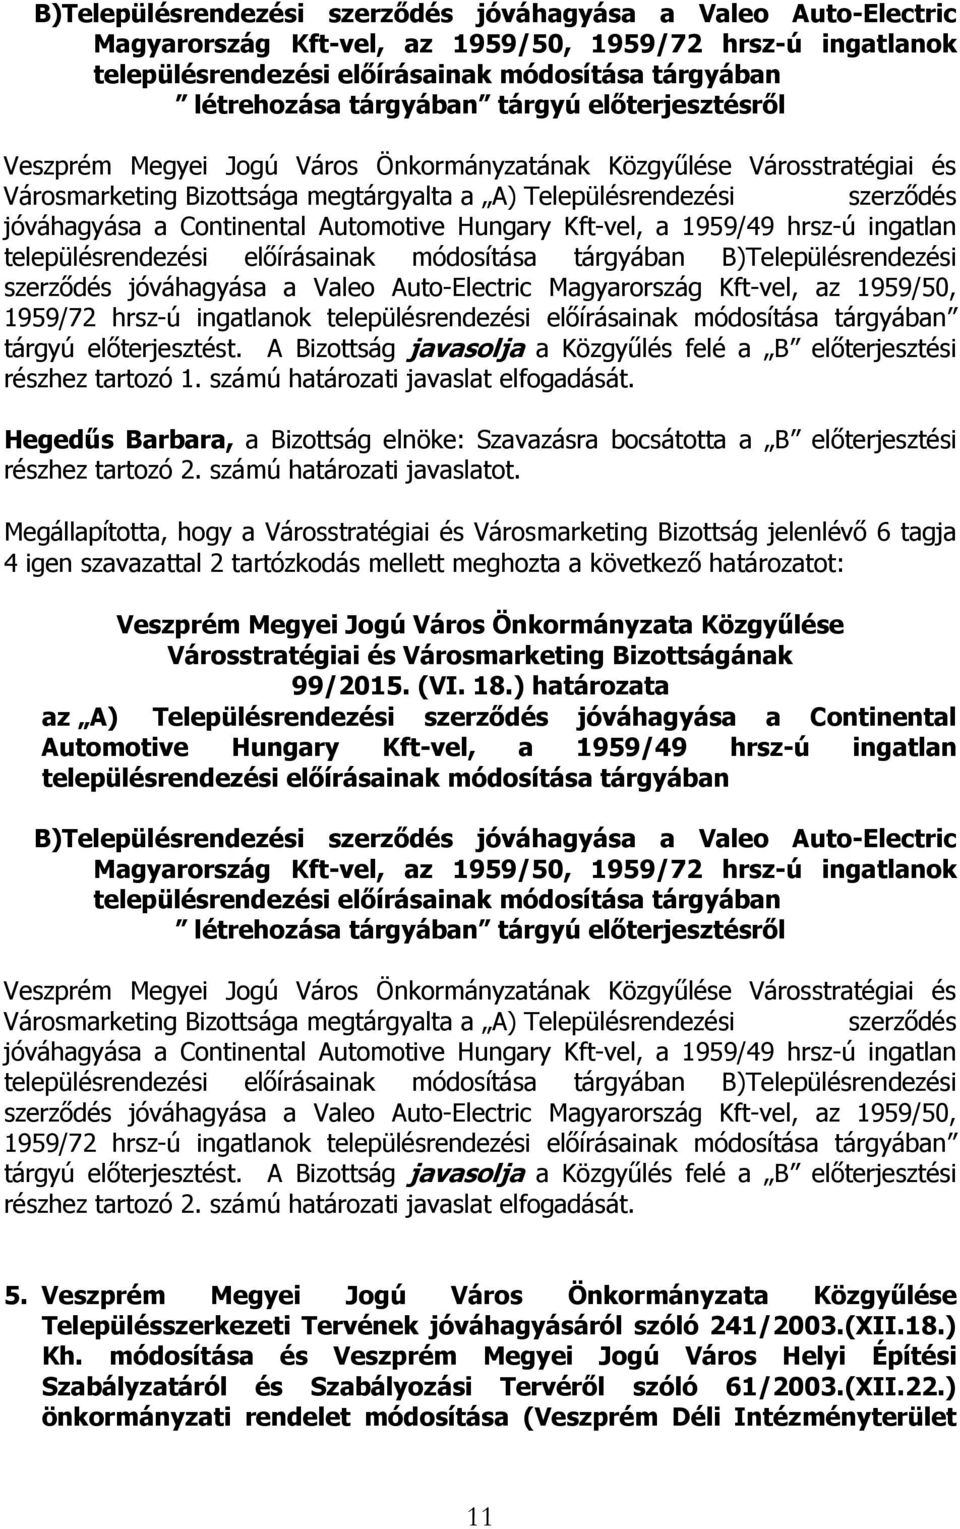 előírásainak módosítása tárgyában B)Településrendezési szerződés jóváhagyása a Valeo Auto-Electric Magyarország Kft-vel, az 1959/50, 1959/72 hrsz-ú ingatlanok településrendezési előírásainak